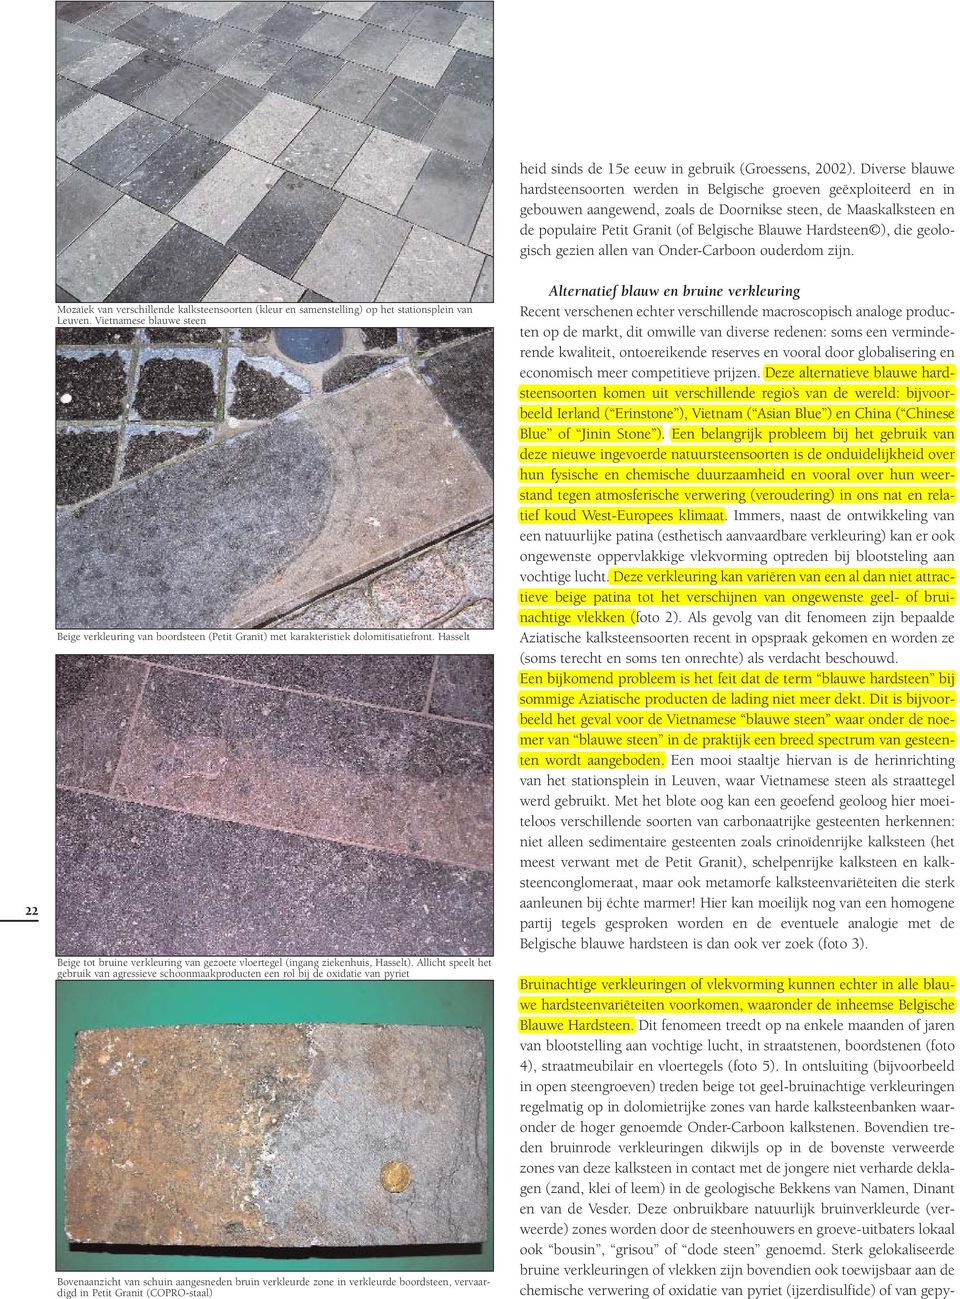 Hardsteen ), die geologisch gezien allen van Onder-Carboon ouderdom zijn. 22 Mozaïek van verschillende kalksteensoorten (kleur en samenstelling) op het stationsplein van Leuven.